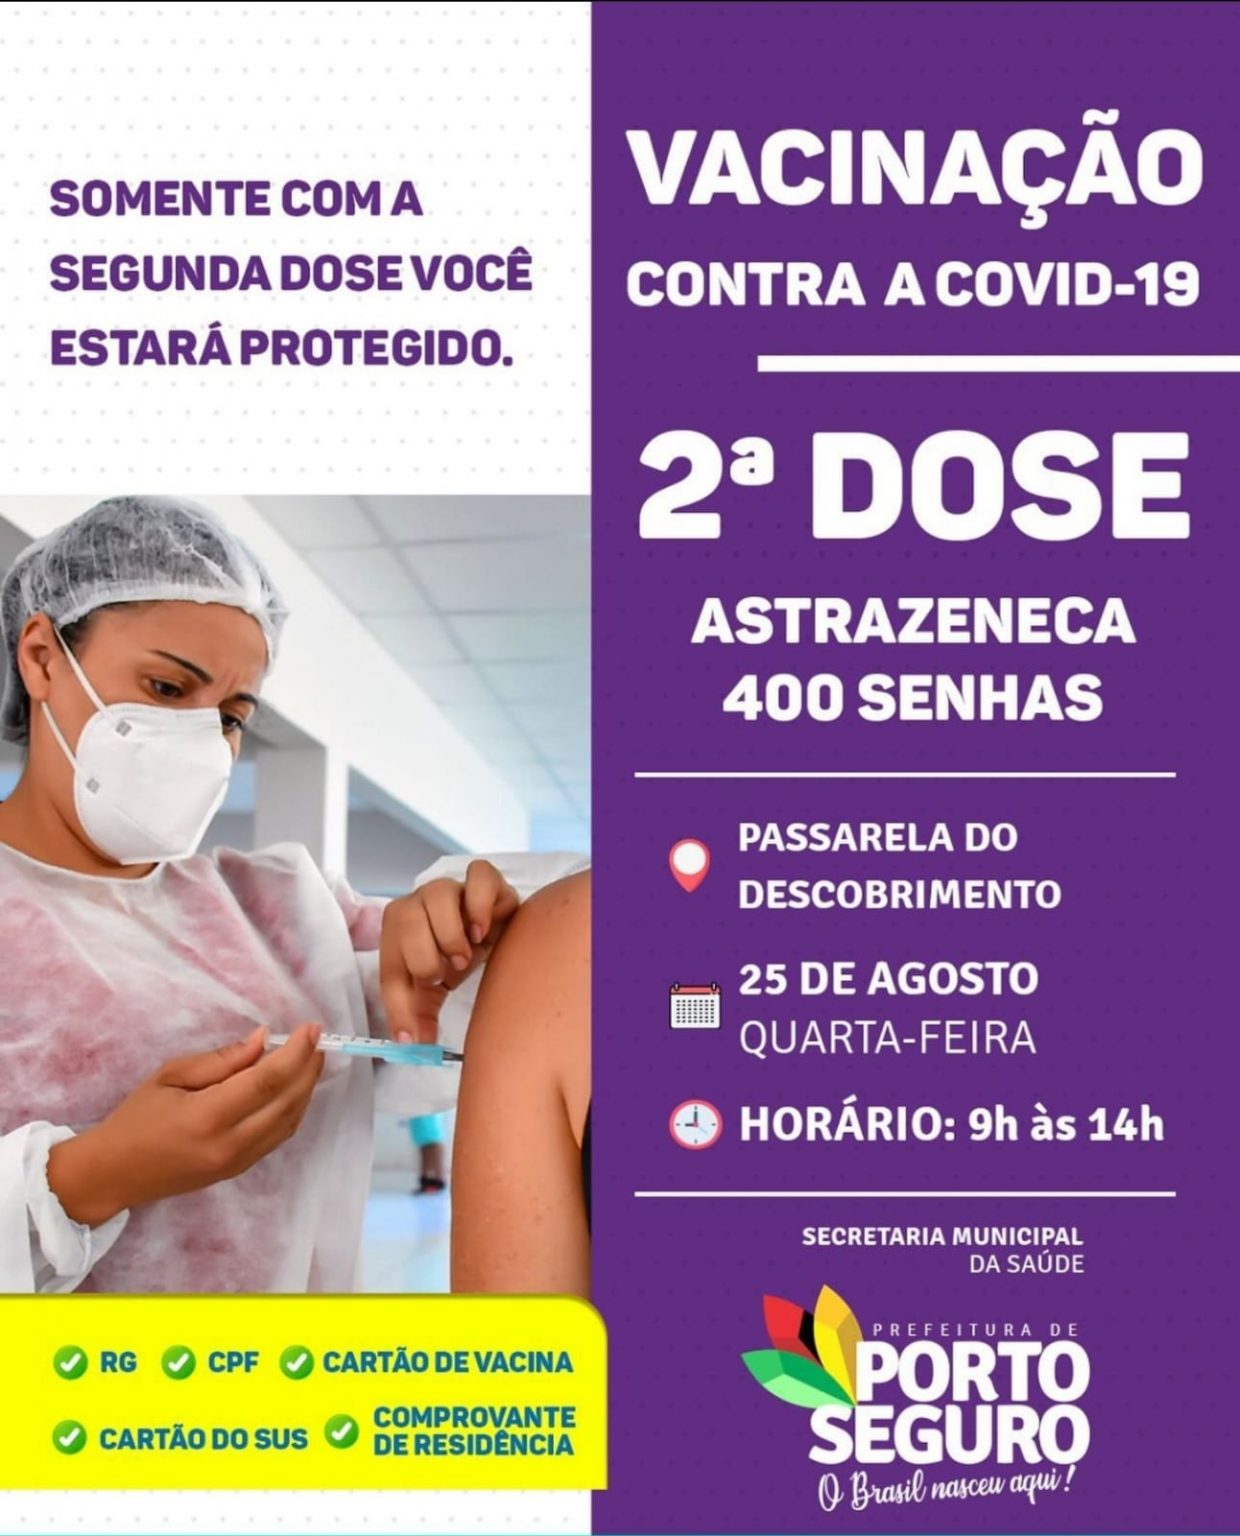 Porto Seguro: Cronograma de Vacinação contra a Covid-19 (dia 25 de agosto) 10